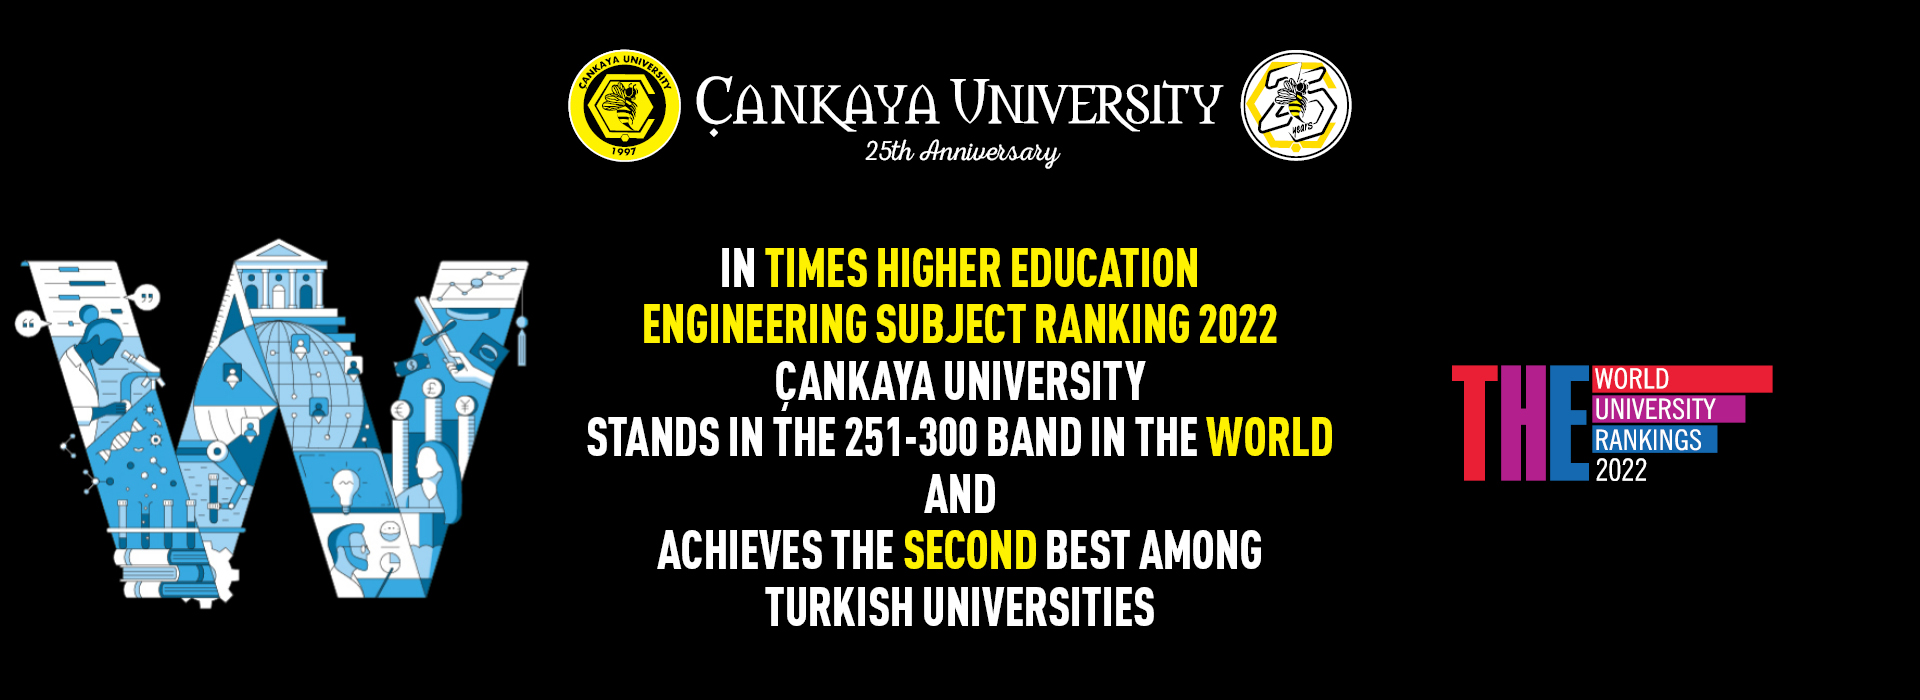 Çankaya University